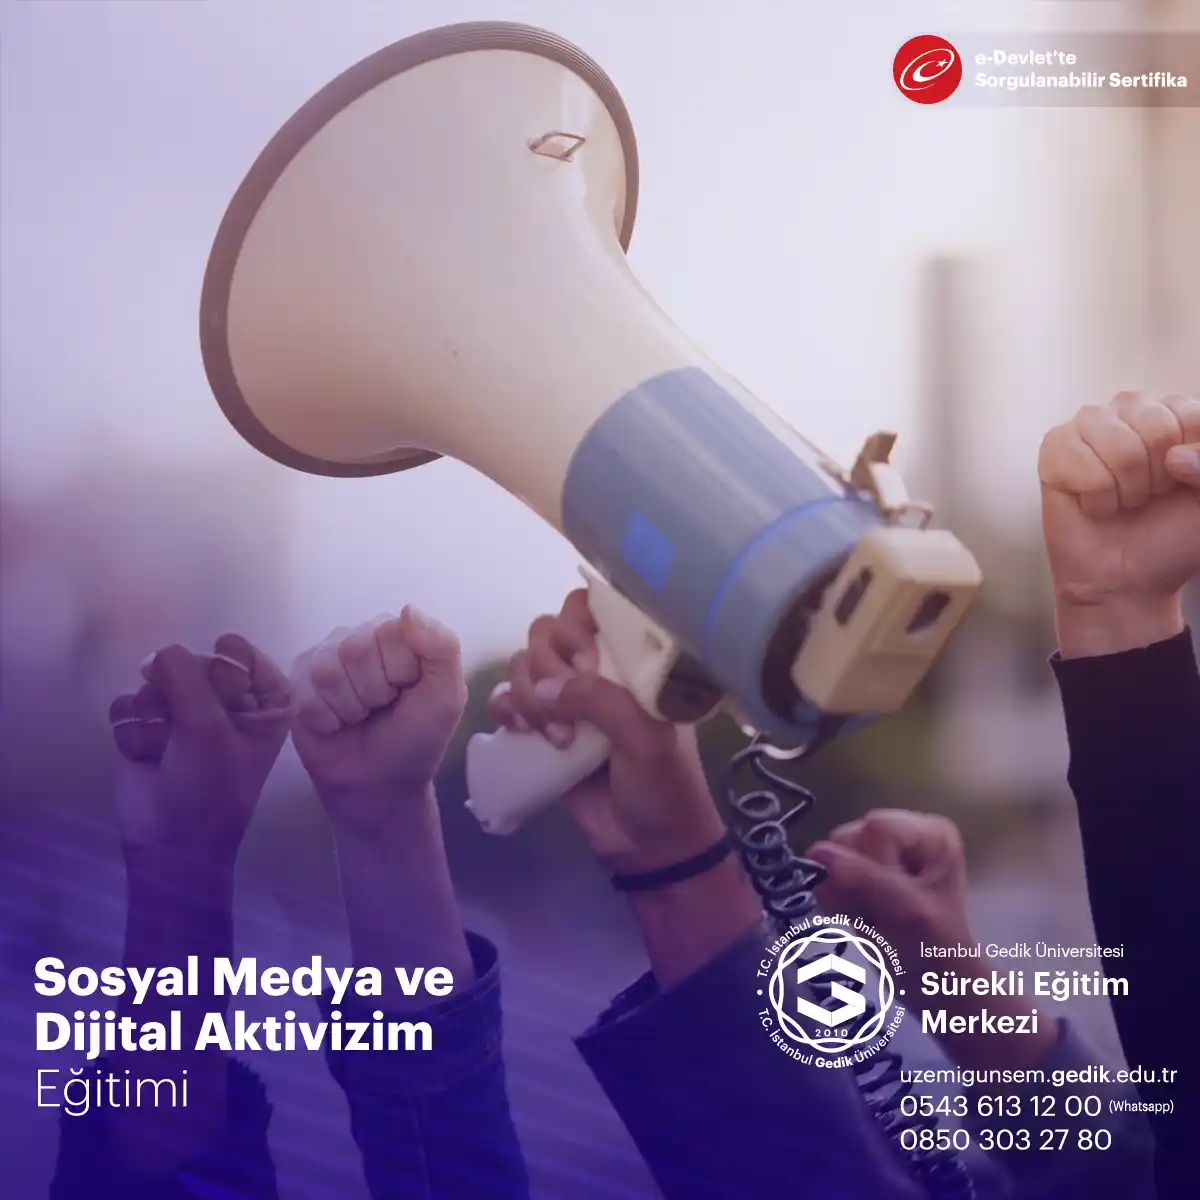 Sosyal medya ve dijital aktivizm eğitimi, aktivistlerin ve toplumsal değişim savunucularının dijital platformları etkili bir şekilde kullanma yeteneklerini geliştirmeyi amaçlar.